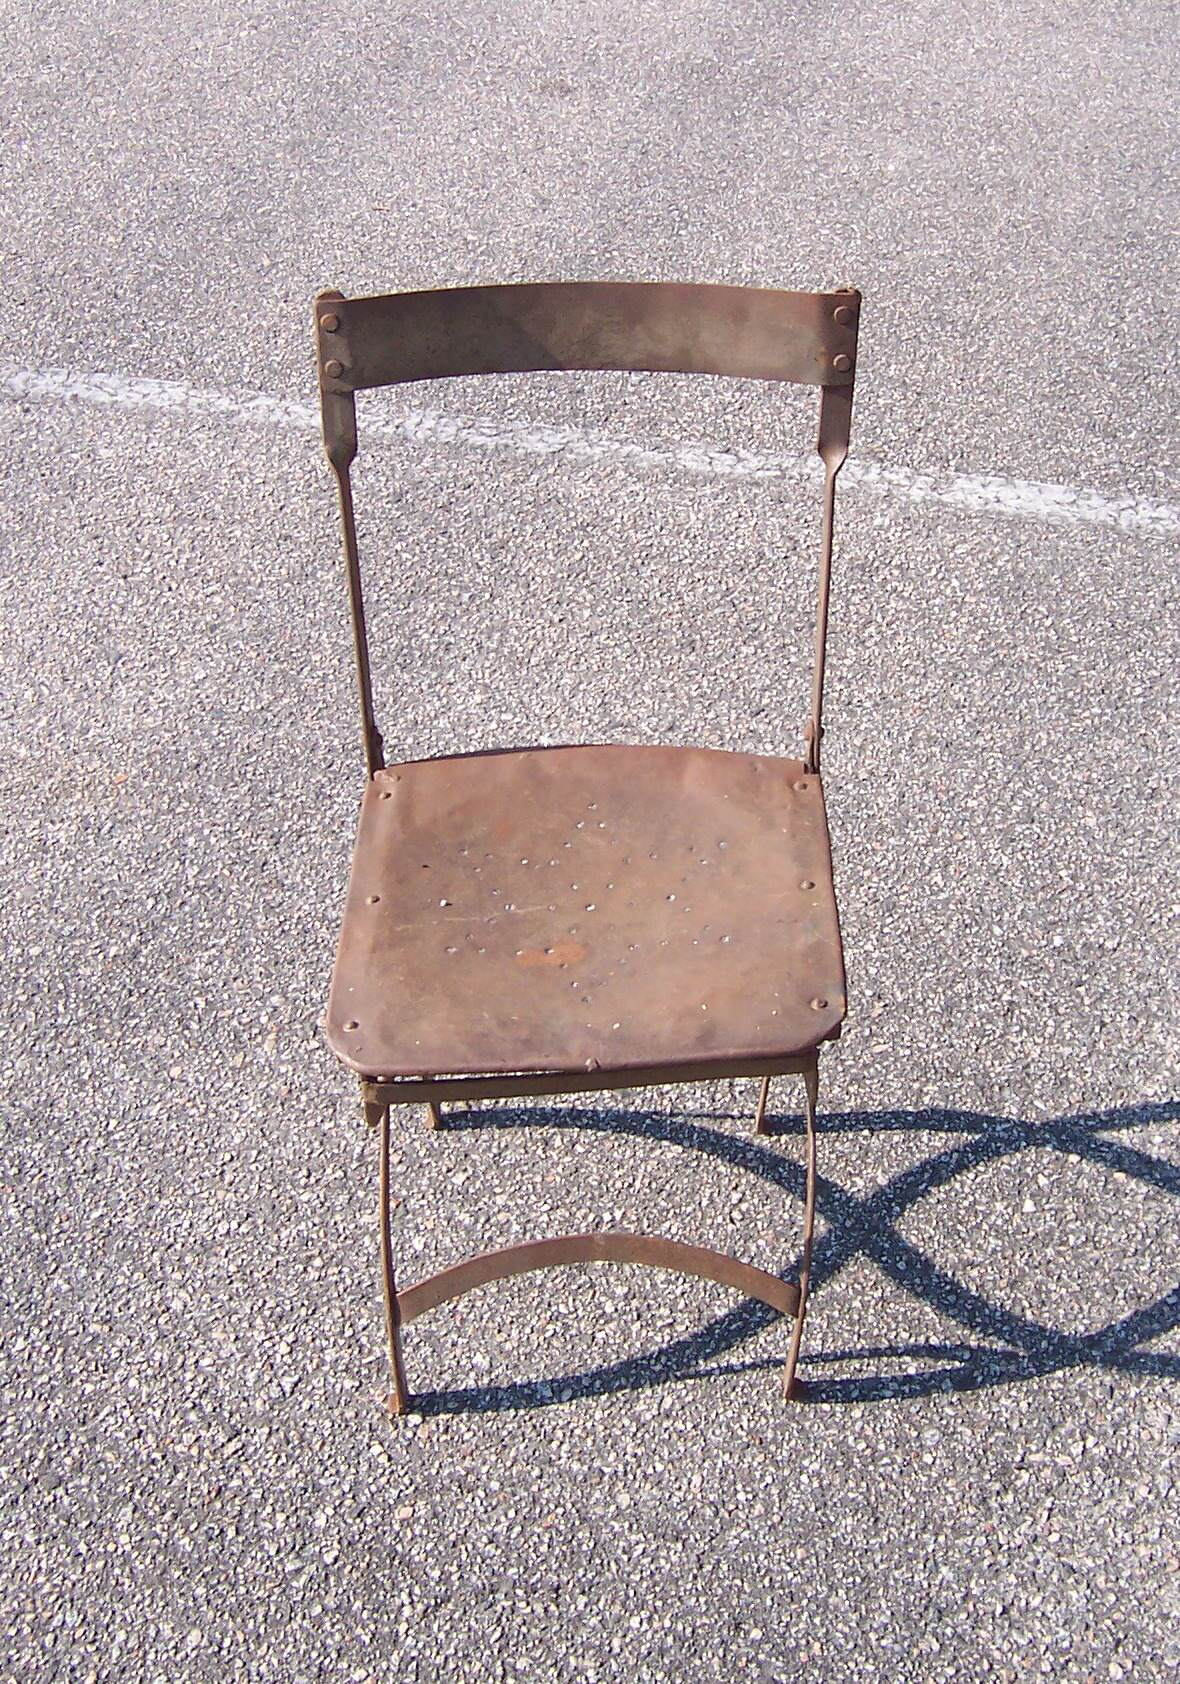 SP 75 PP 060515 007 Antique Metal Folding Chair 175 1 